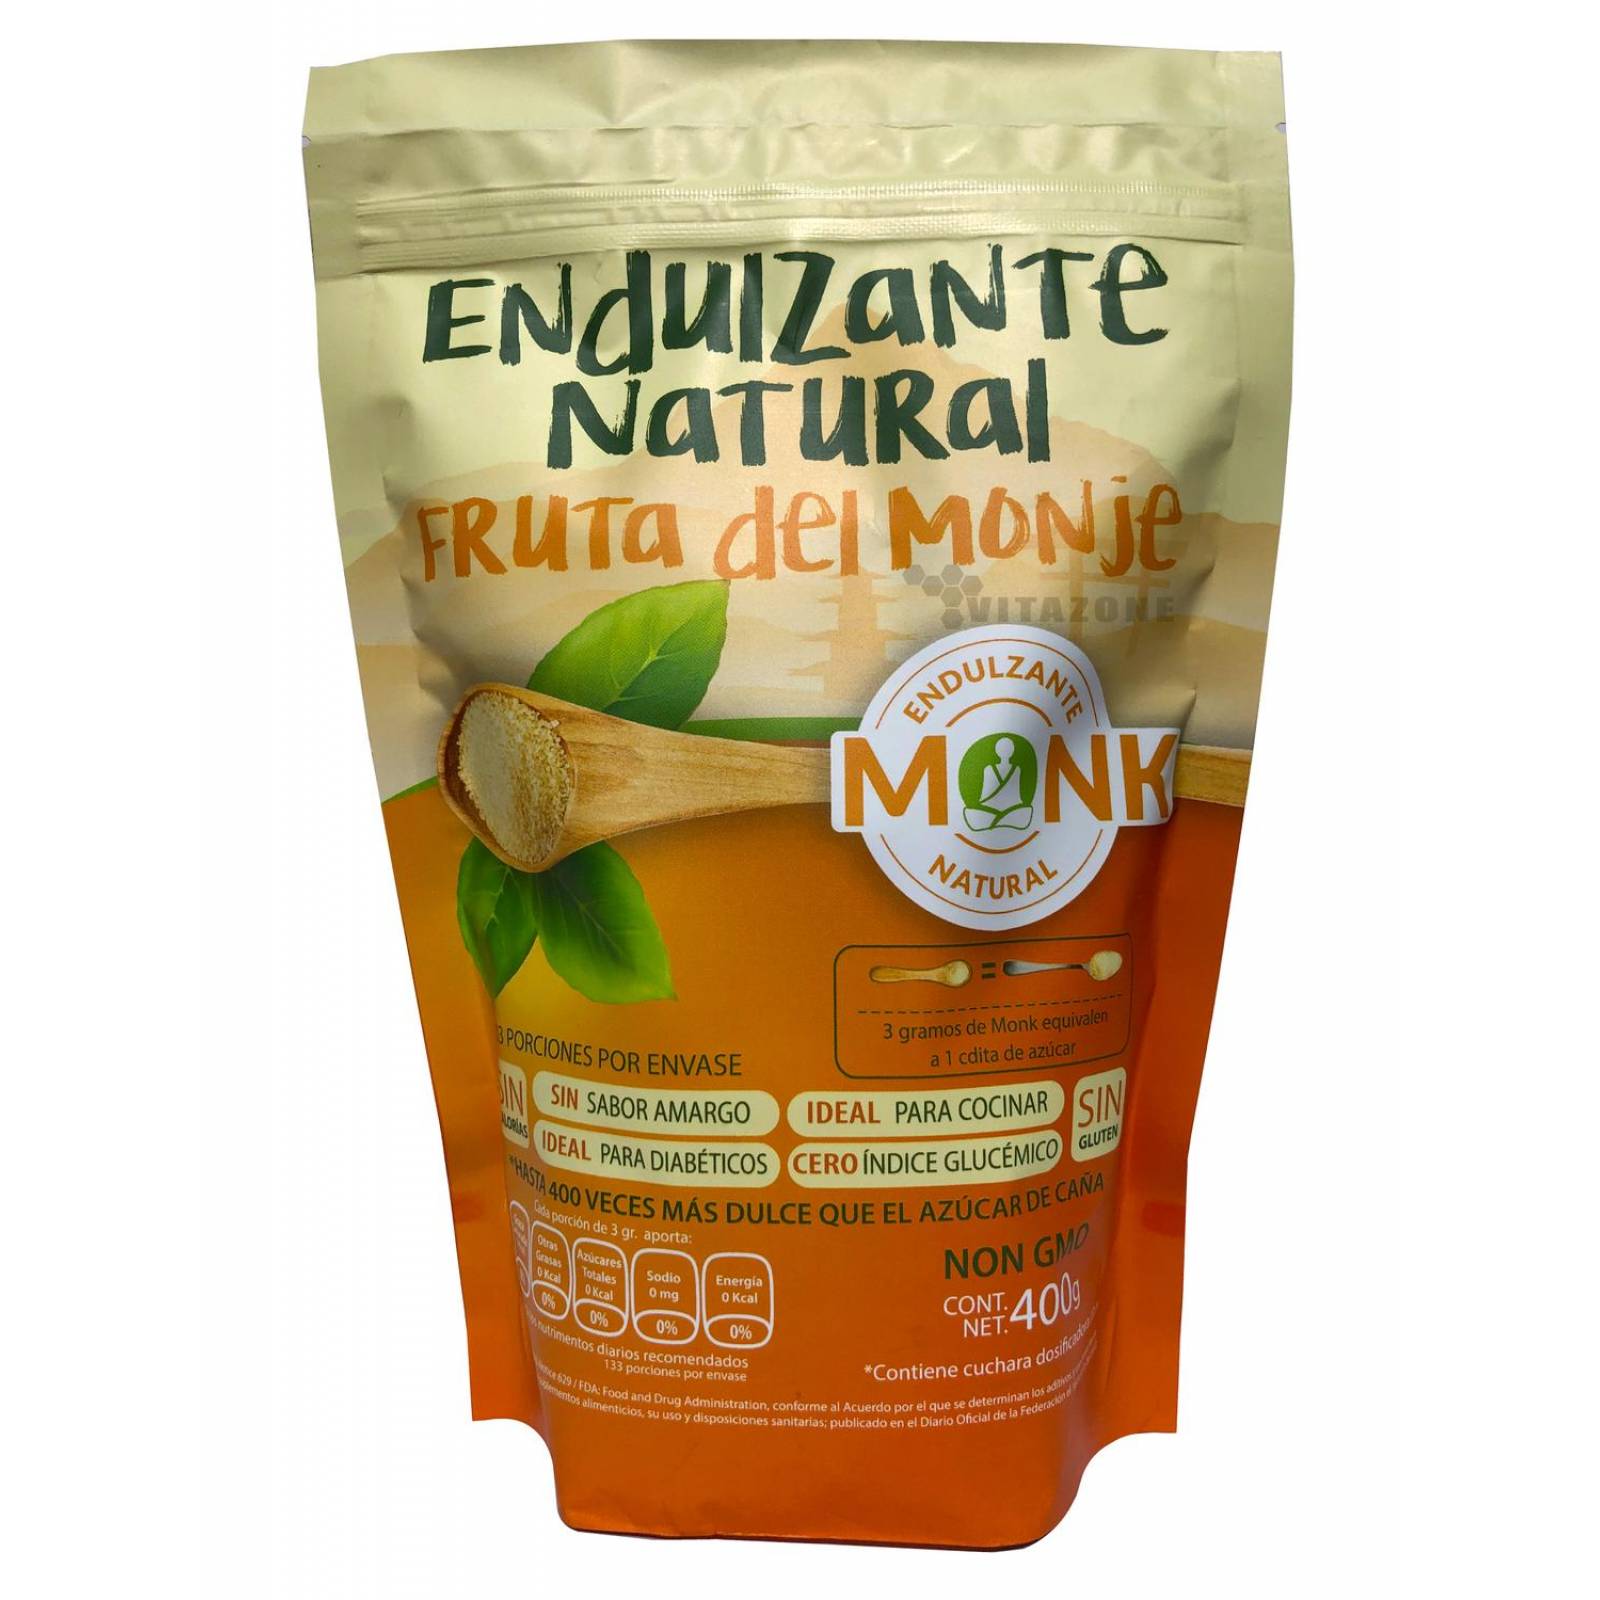 Monk Endulzante Natural Fruta Del Monje G Alimentos Y Bebidas